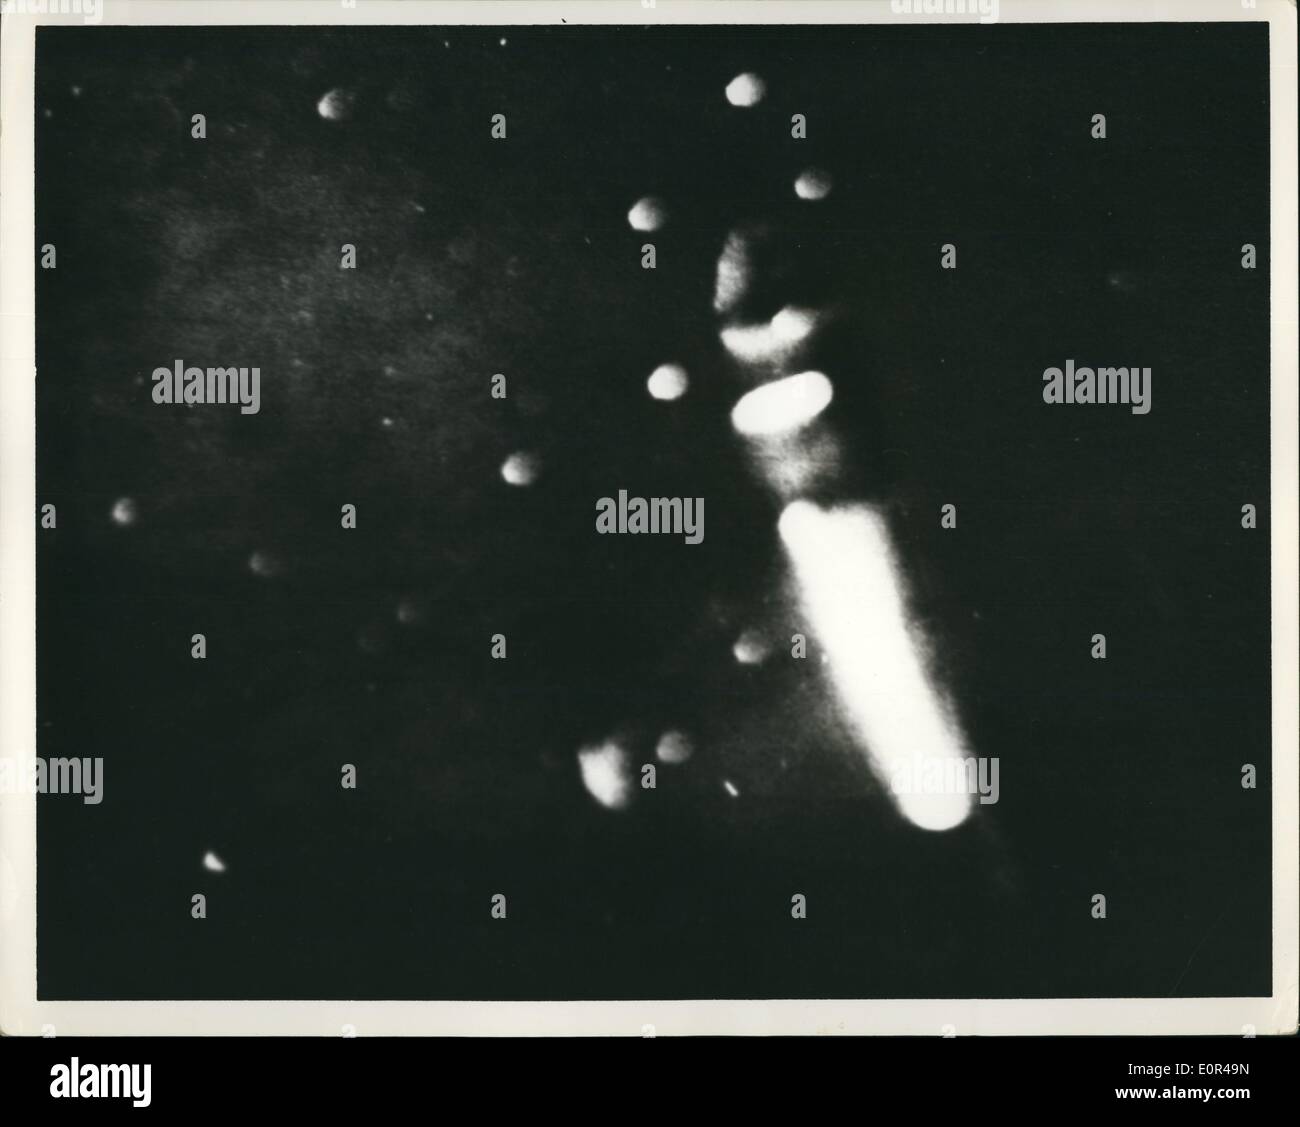 Il 12 Dic. 1957 - a forma di sigaro oggetto avvistato e fotografato da astronomo Ralph Nicholson di Patterson New Jersey. La foto è stata scattata il 12 dicembre 1957. Foto Stock